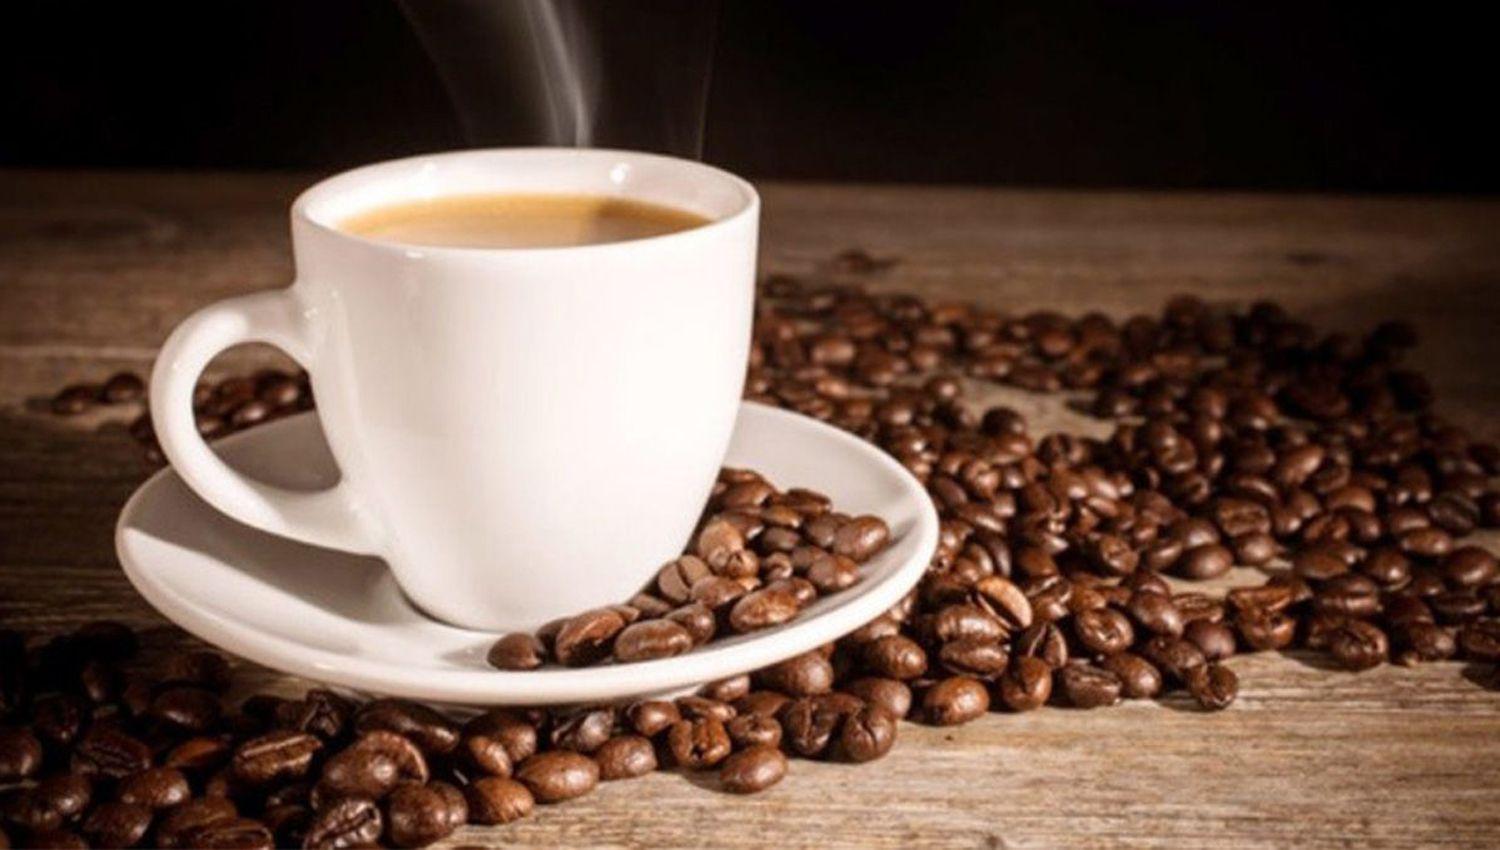 Diacutea del cafeacute- tendencias en cuarentena y consejos para ser barista en casa